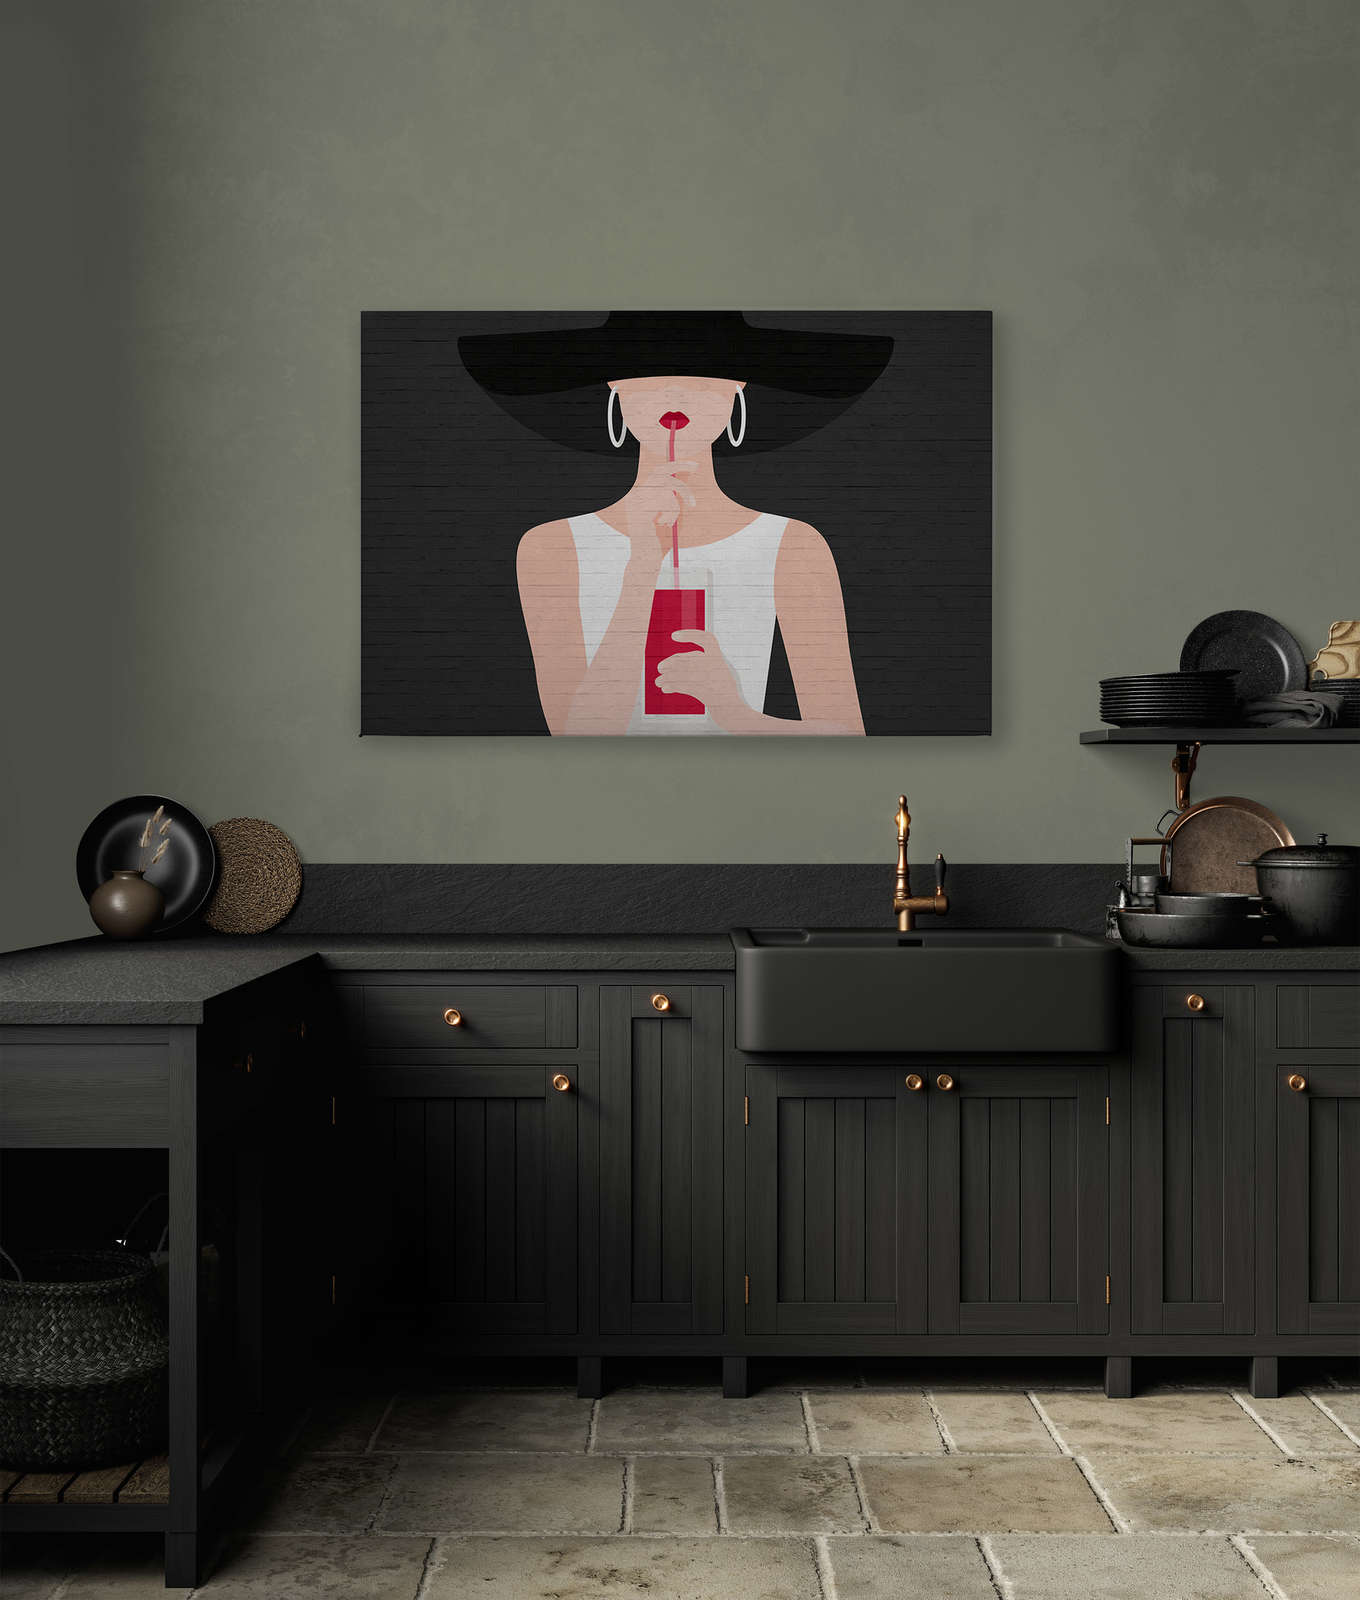             Toile noire Femme avec cocktail & maçonnerie - 1,20 m x 0,80 m
        